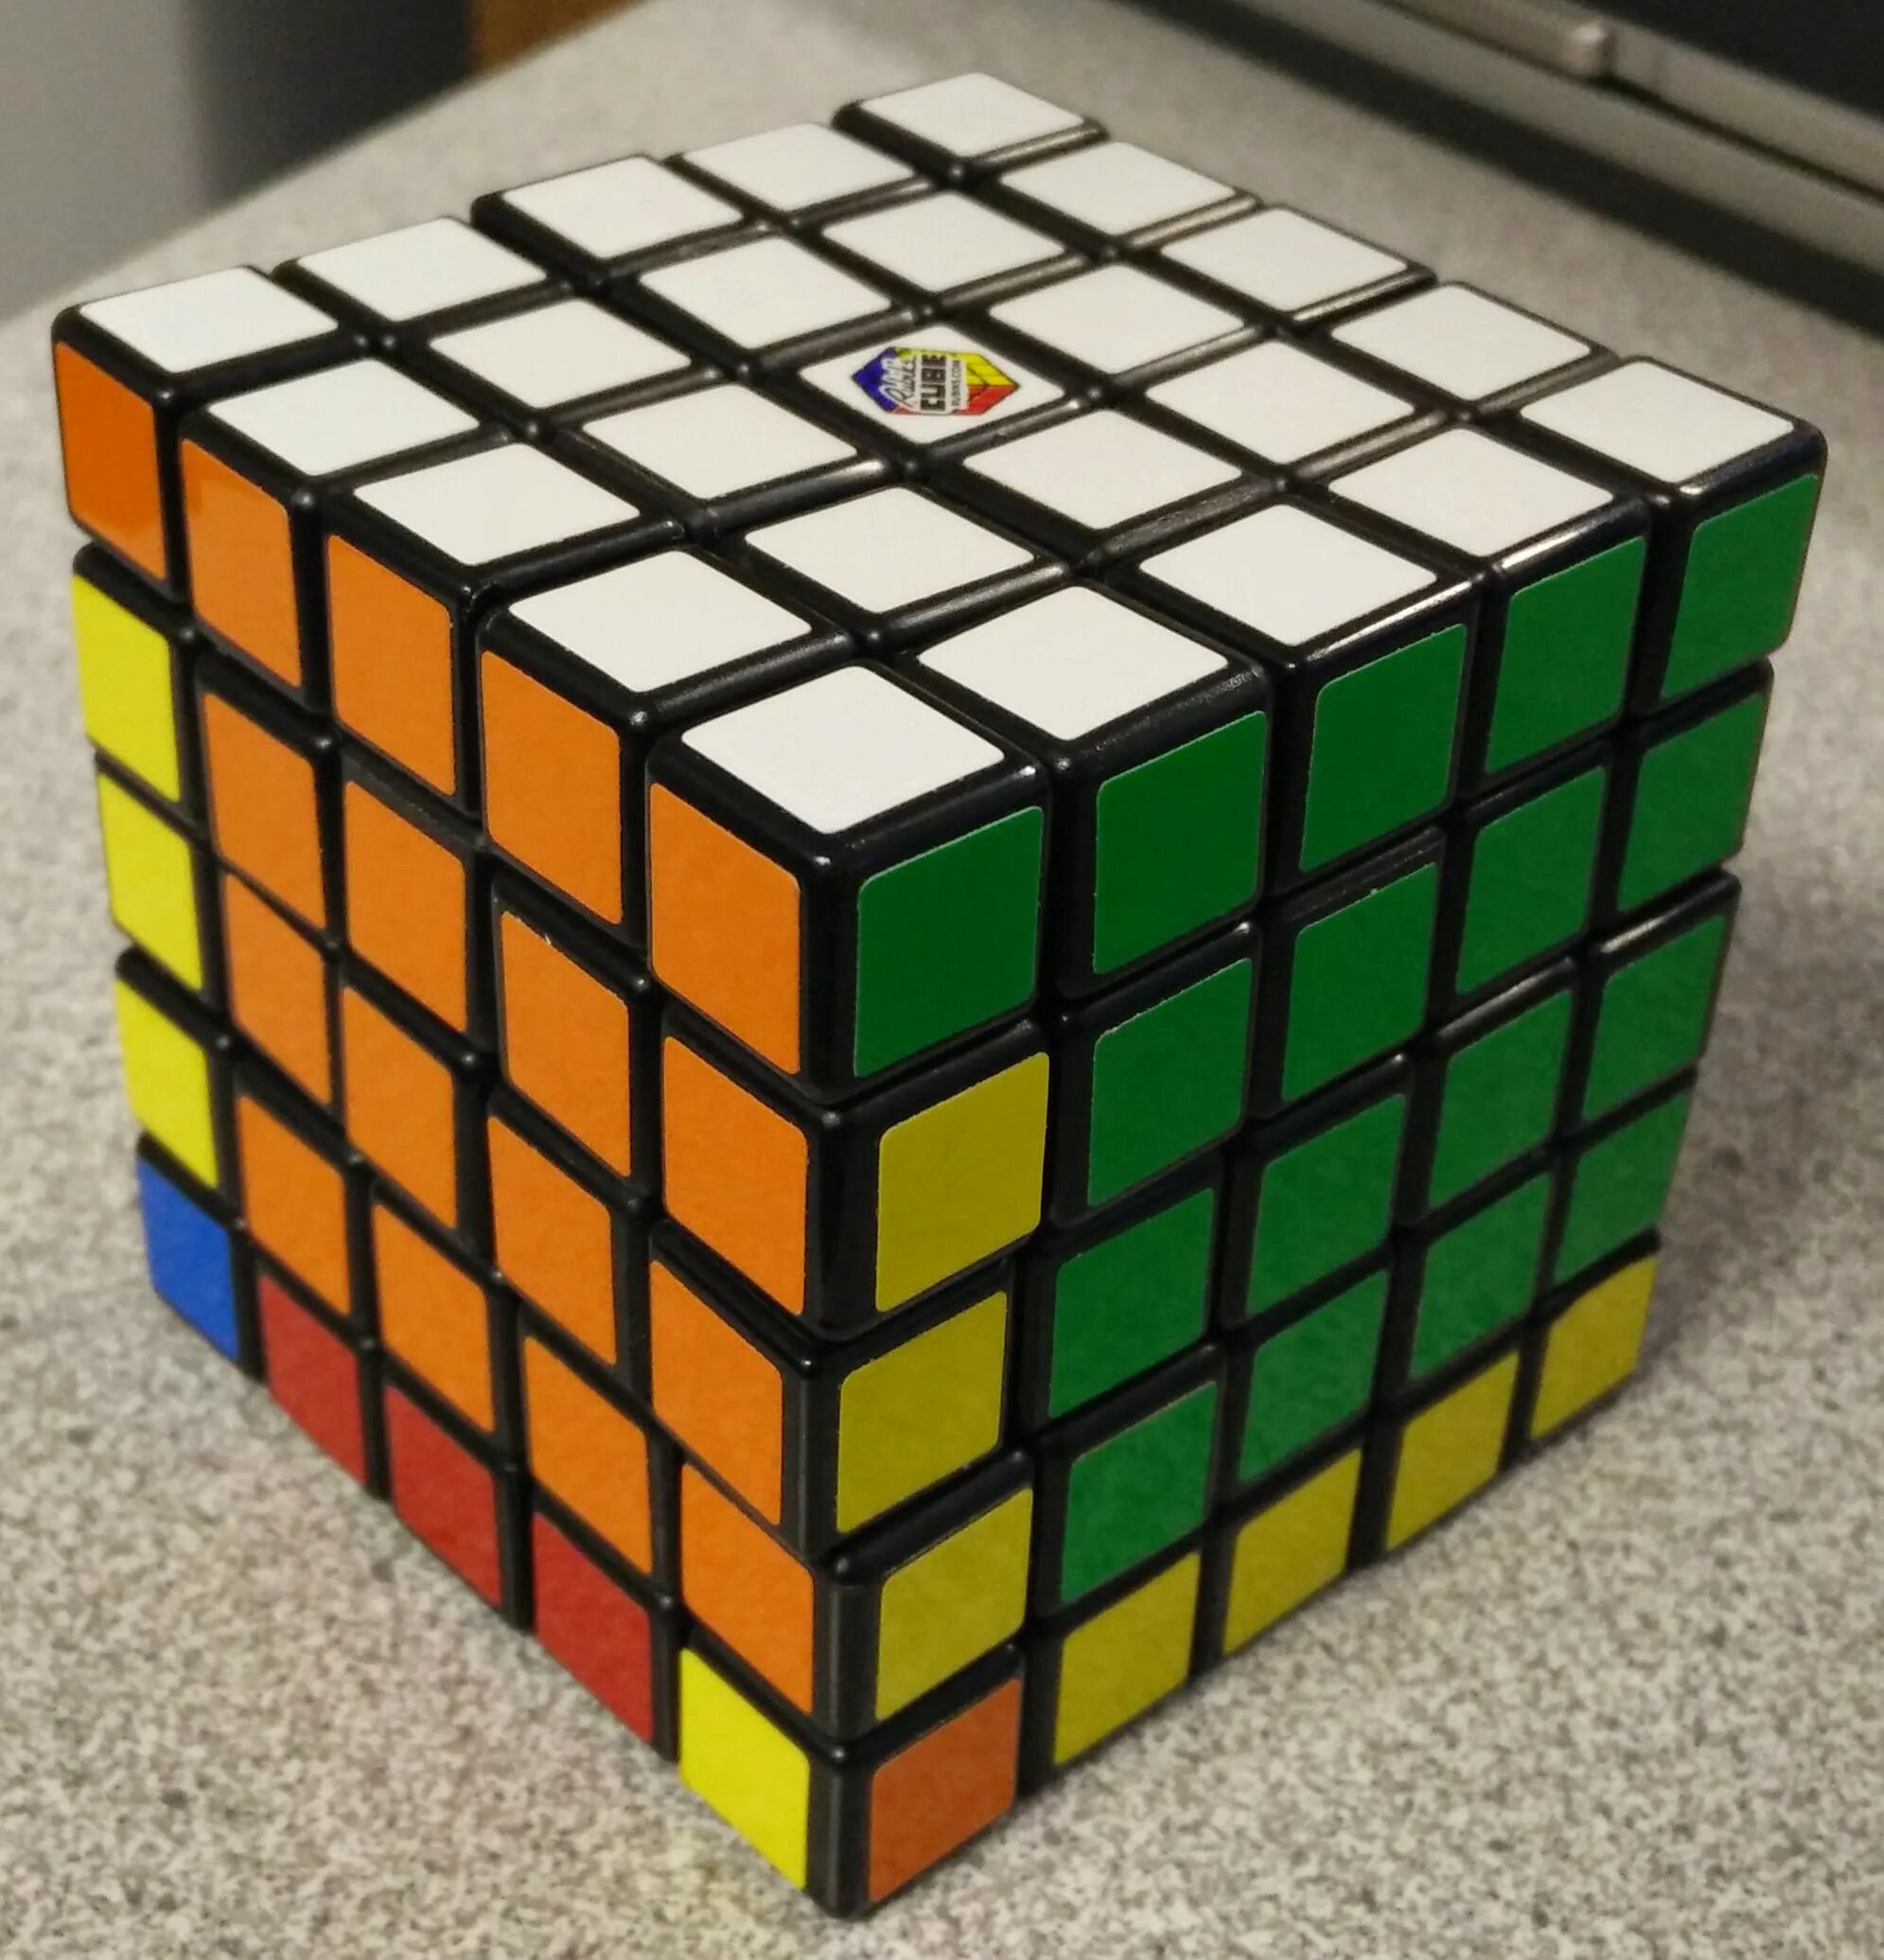 Cube видео. P2l кубик Рубика. Кубик Рубика Guanlong v2. Рубикс кубик Рубика 3х3 большой. Рубик 1 1 1.